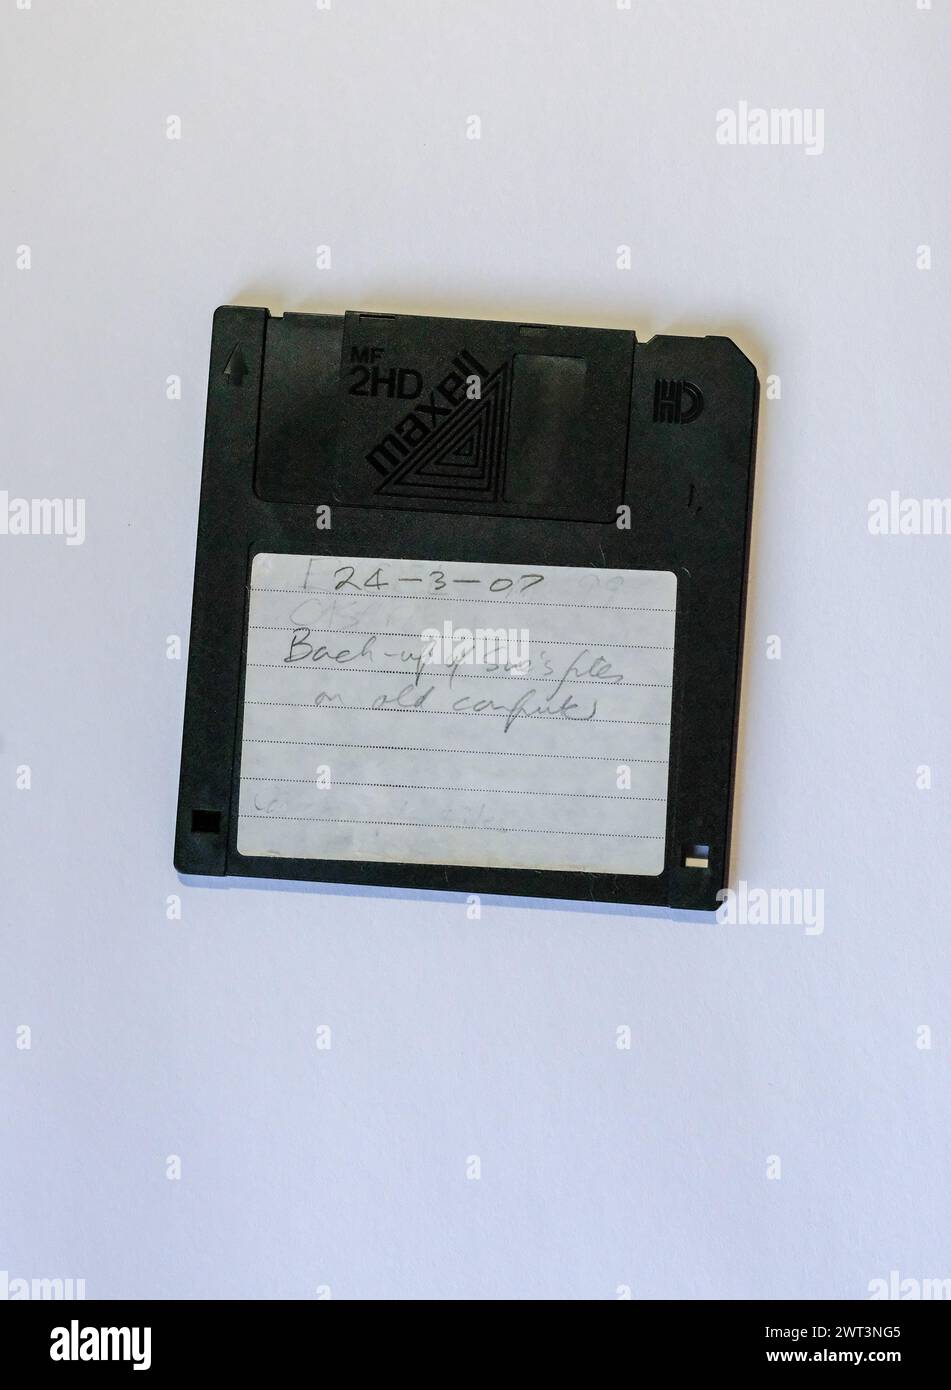 Disketten, die in den 1980er und 1990er Jahren für die Speicherung und Sicherung von Dateien auf Heim- und Business-PCs verwendet wurden Stockfoto